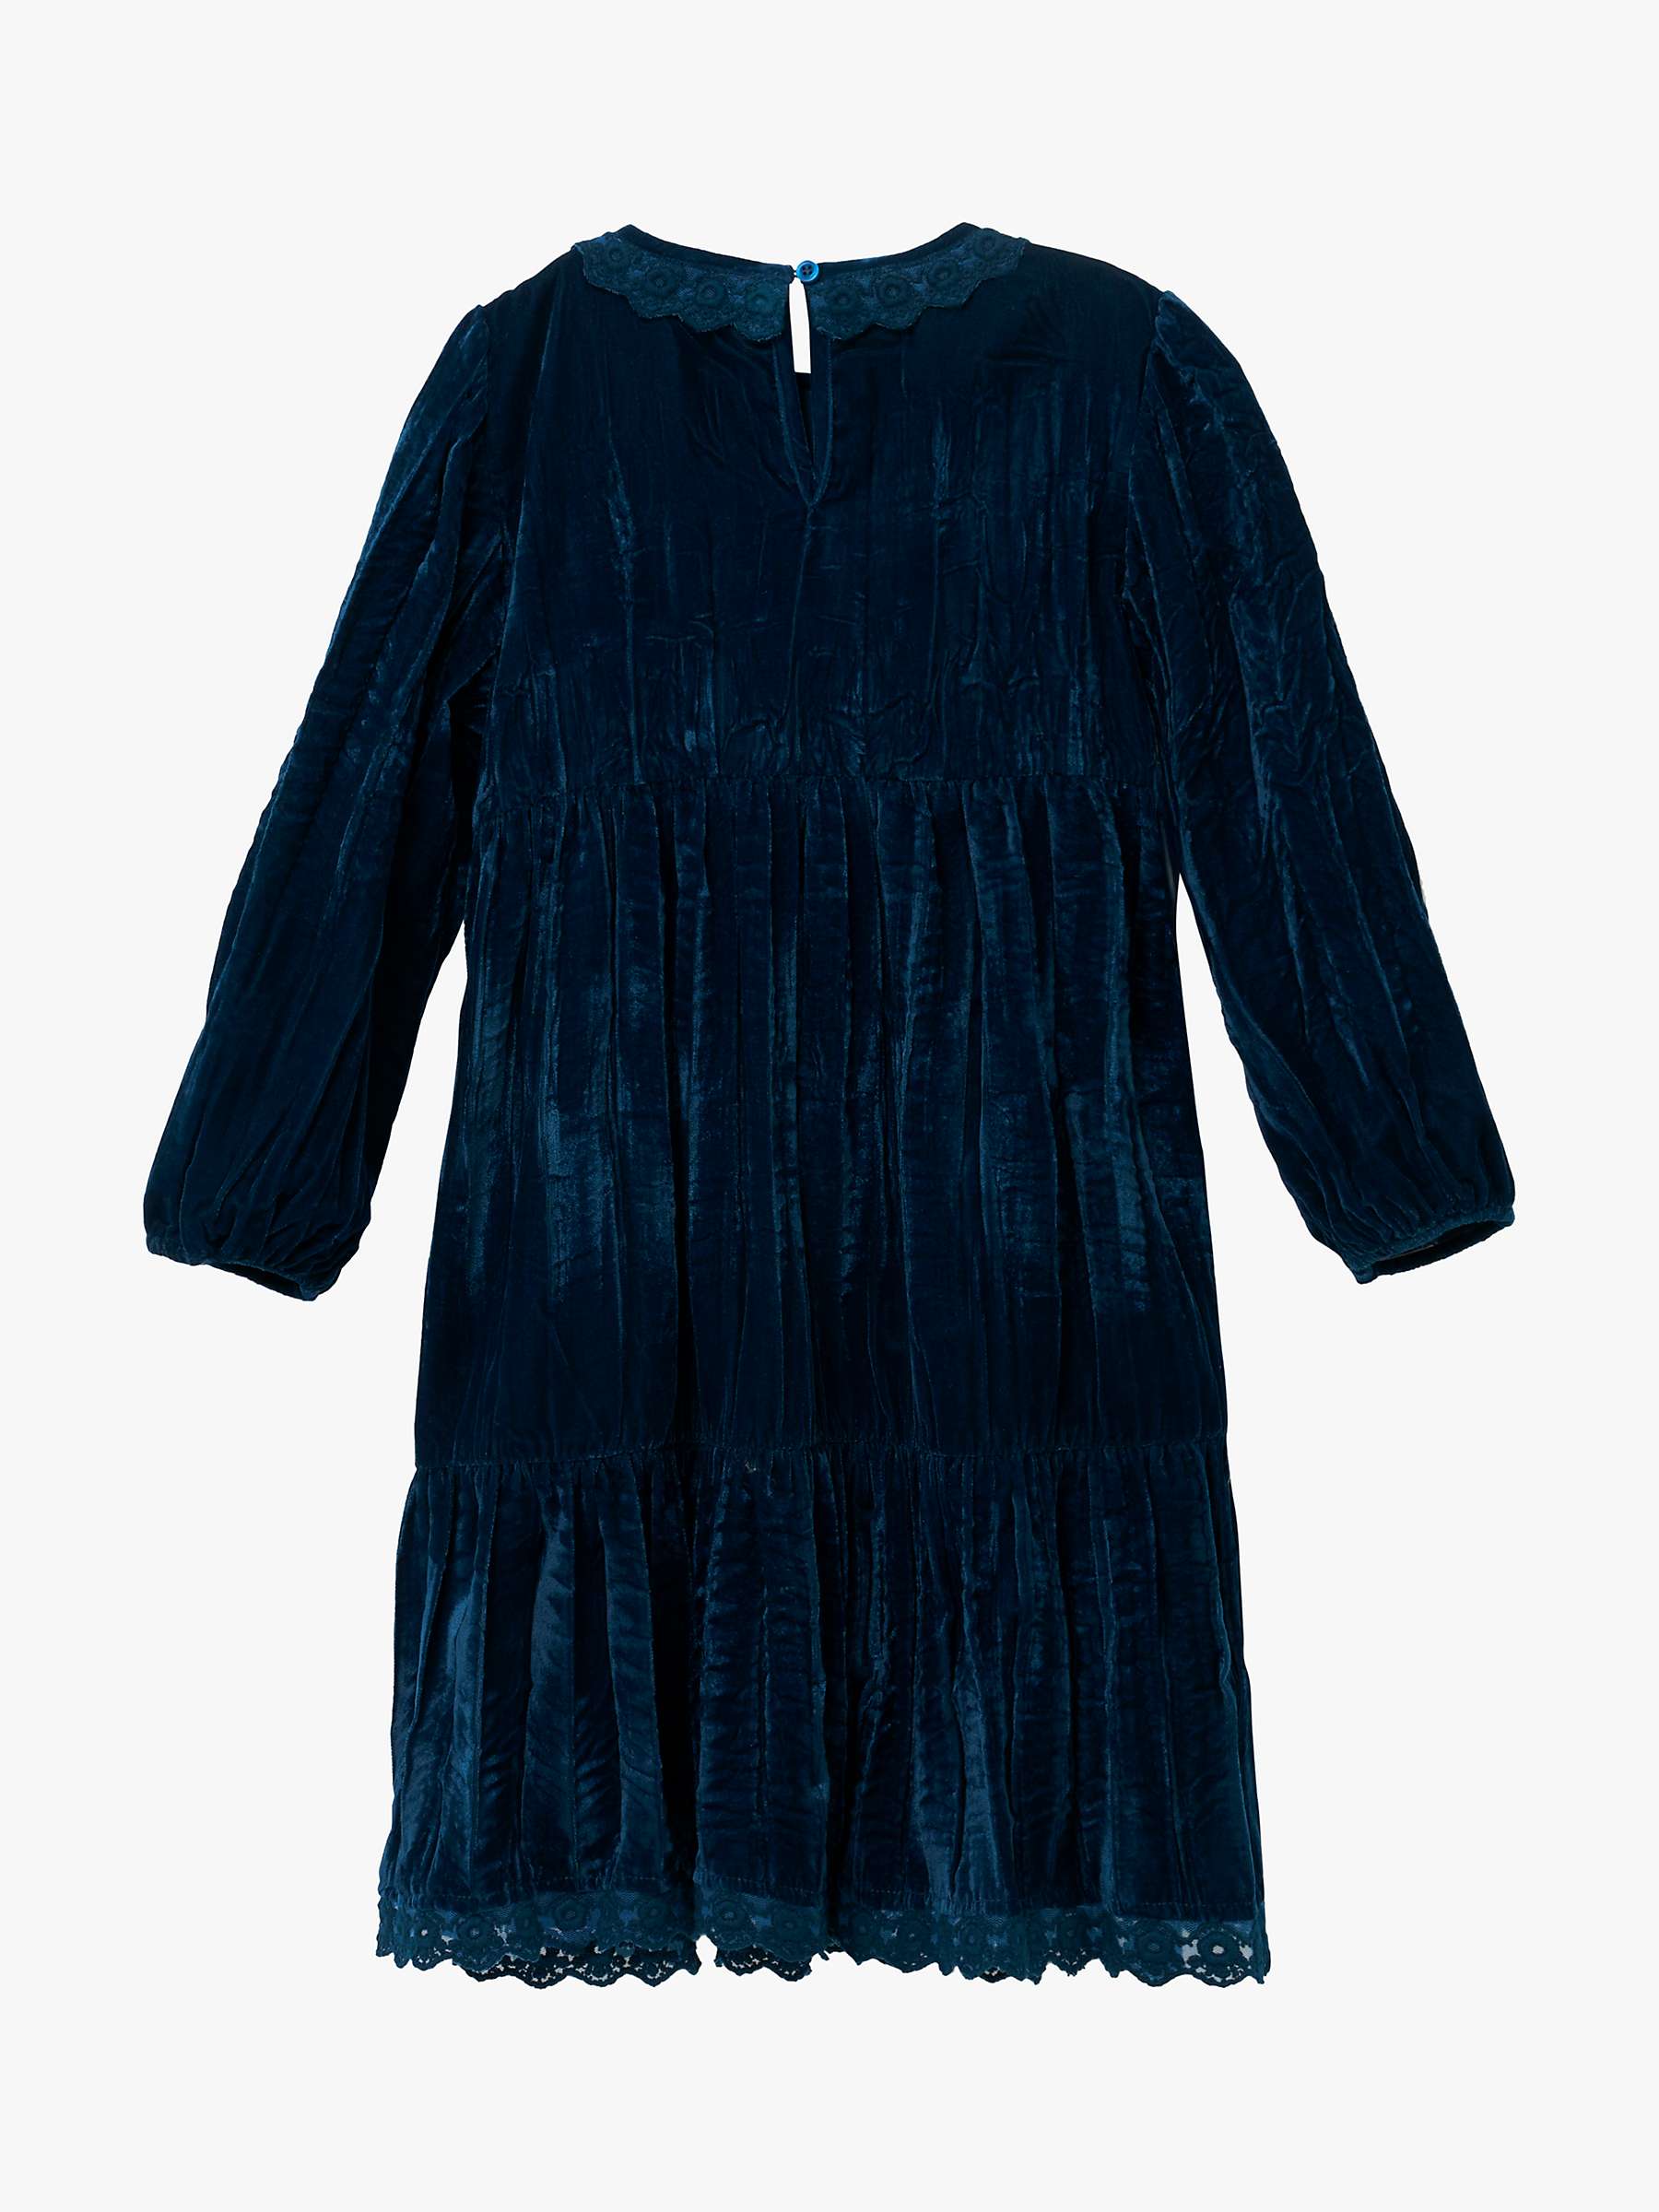 Buy Angel & Rocket Kids' Mia Crushed Velvet Lace Collar Dress, Teal Online at johnlewis.com